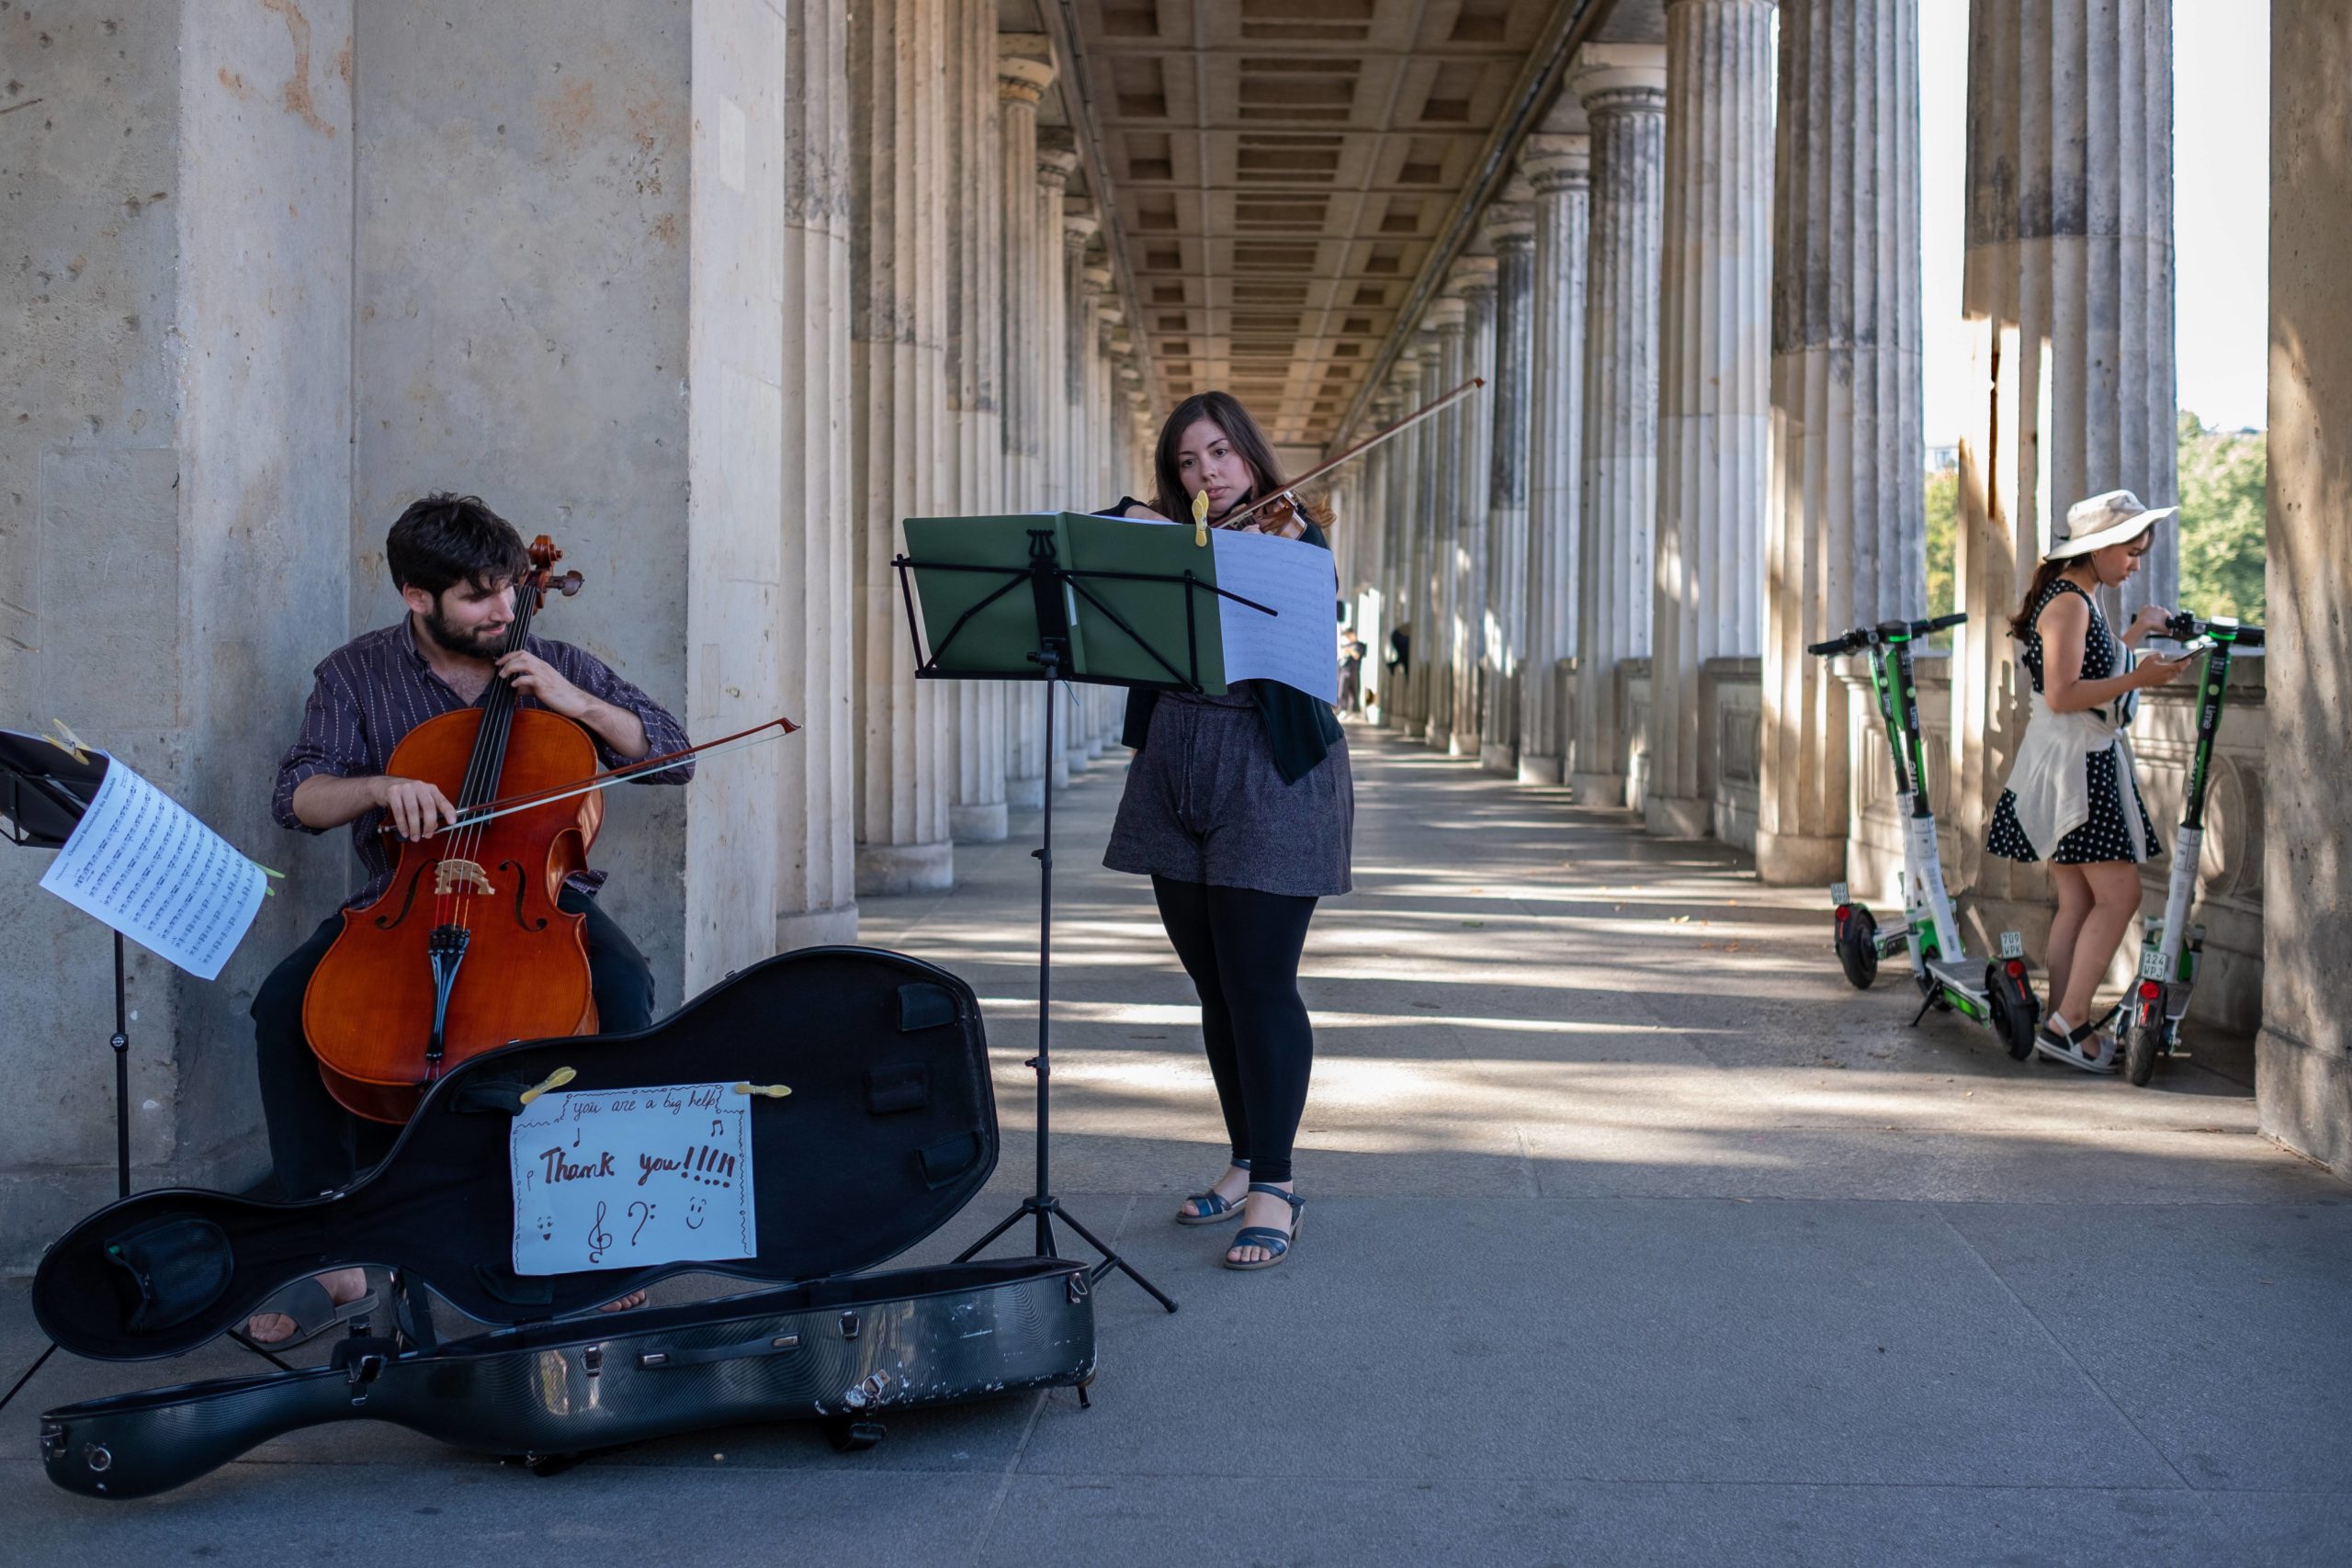 Straßenmusik in Berlin: Mit Cello und Geige unter den Kolonnaden an der Alten Nationalgalerie. Foto: Imago/Rolf Zöllner